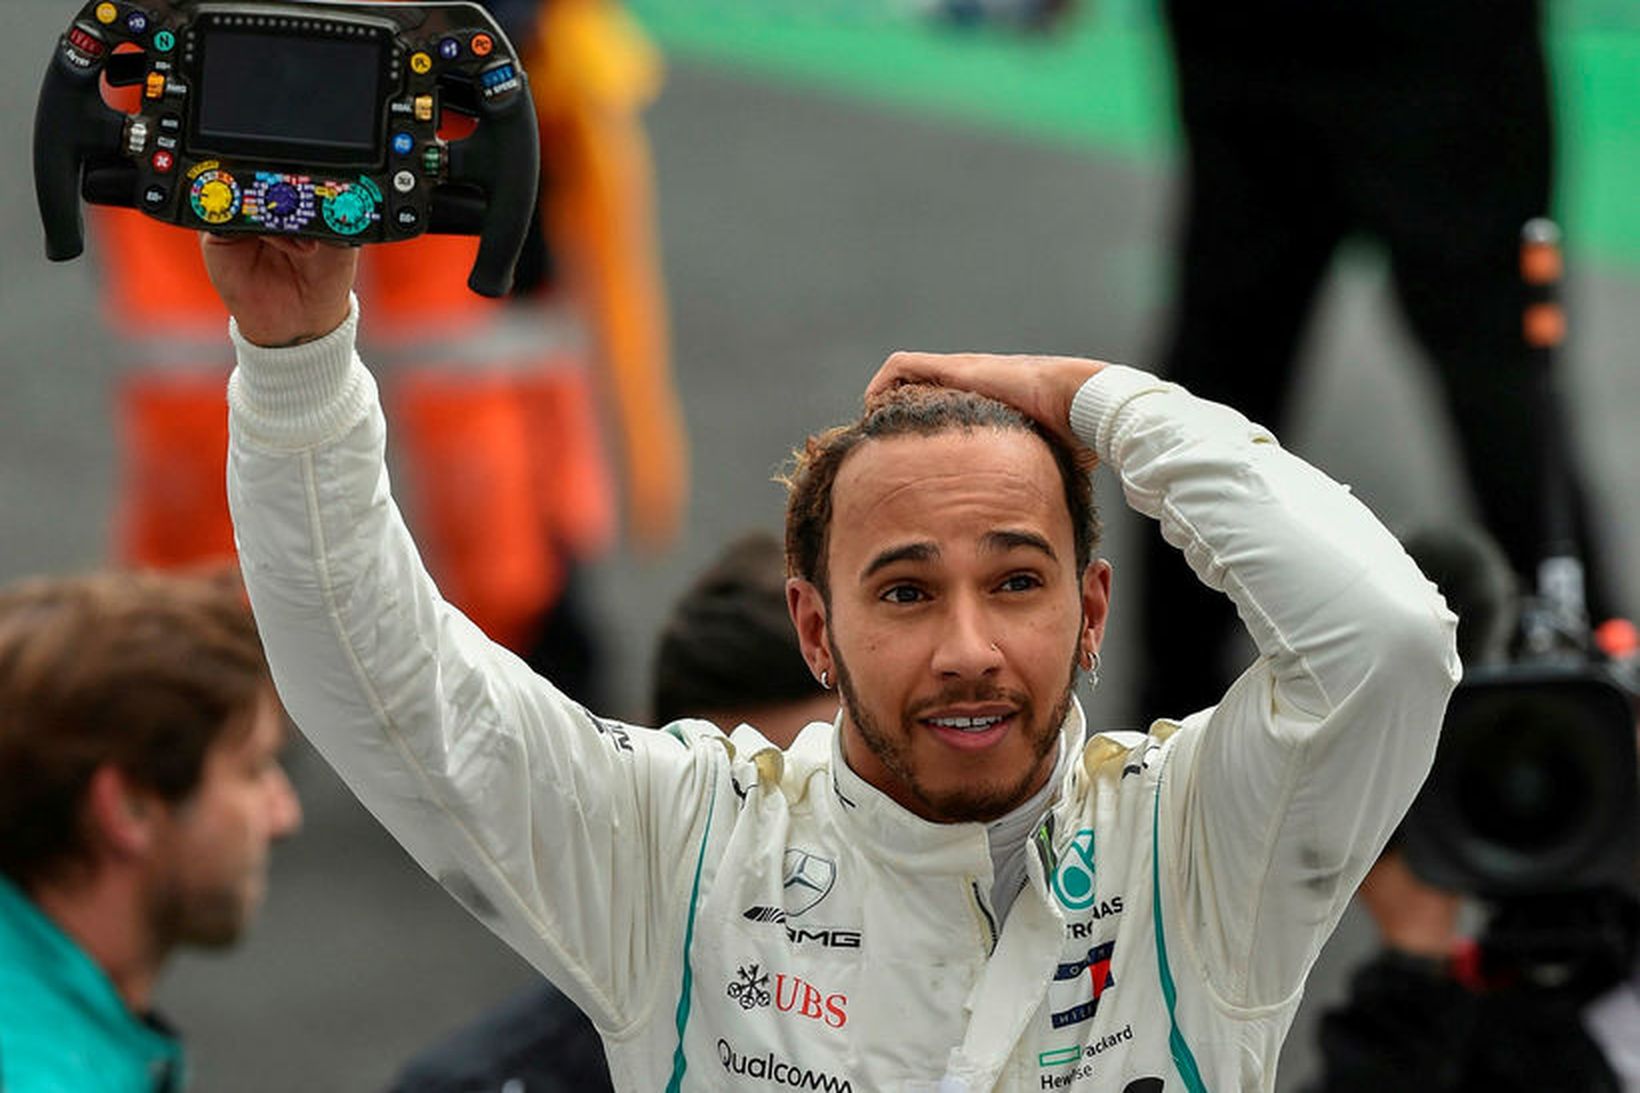 Lewis Hamilton missti tök á bílnum og ók yfir bannlínu …